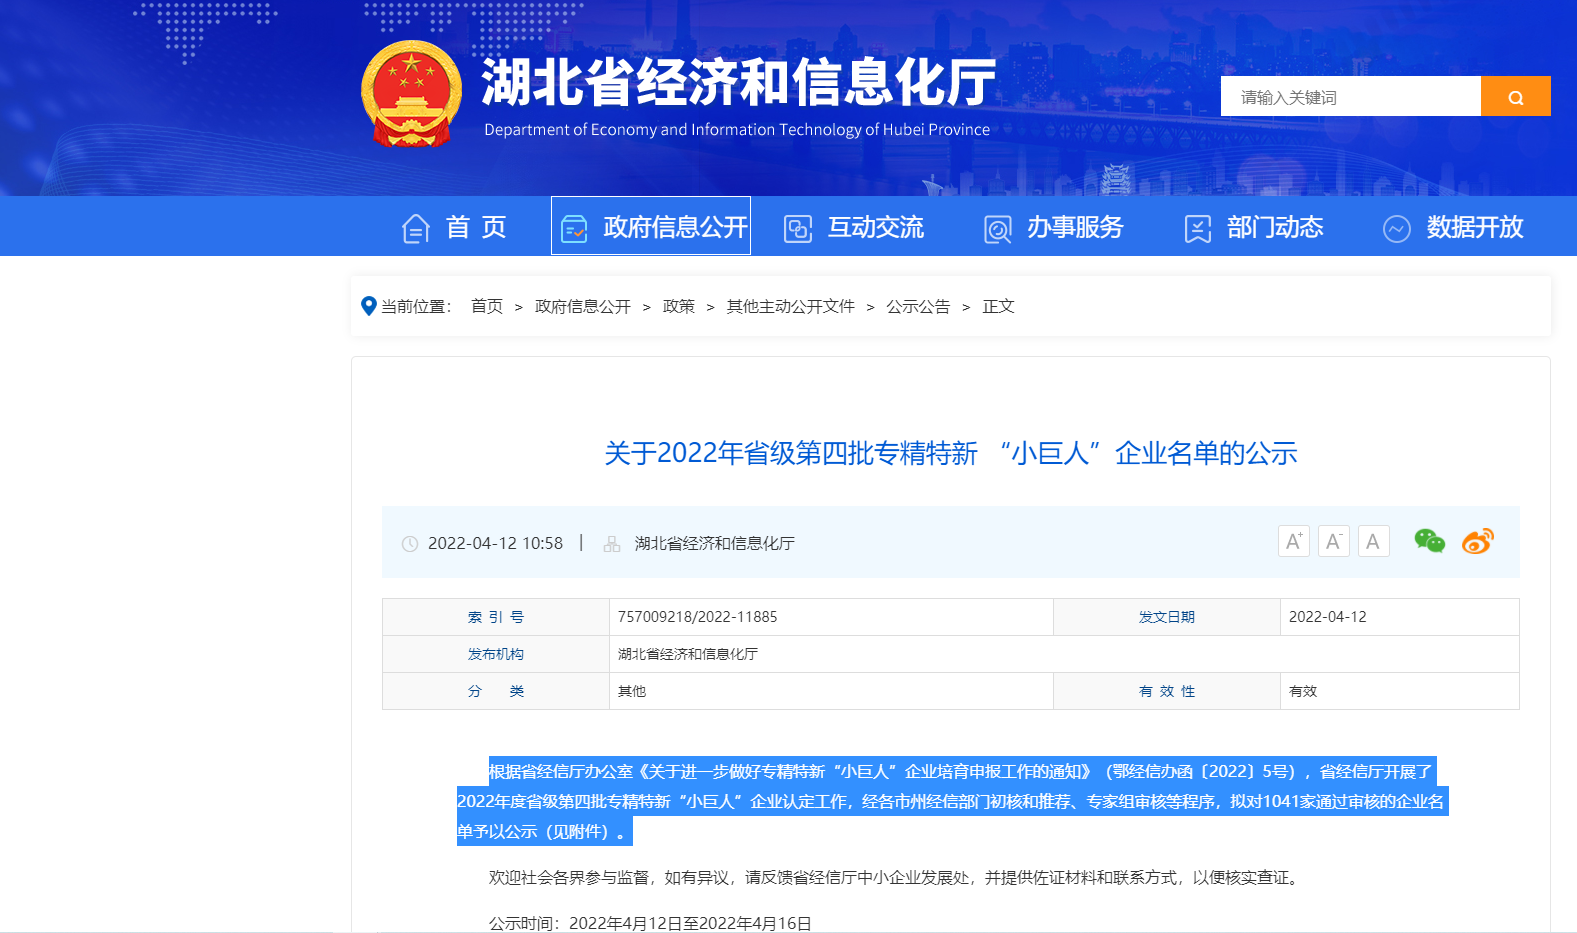 Boas notícias! A empresa ganhou o título de empresa "pequena gigante" na província de Hubei